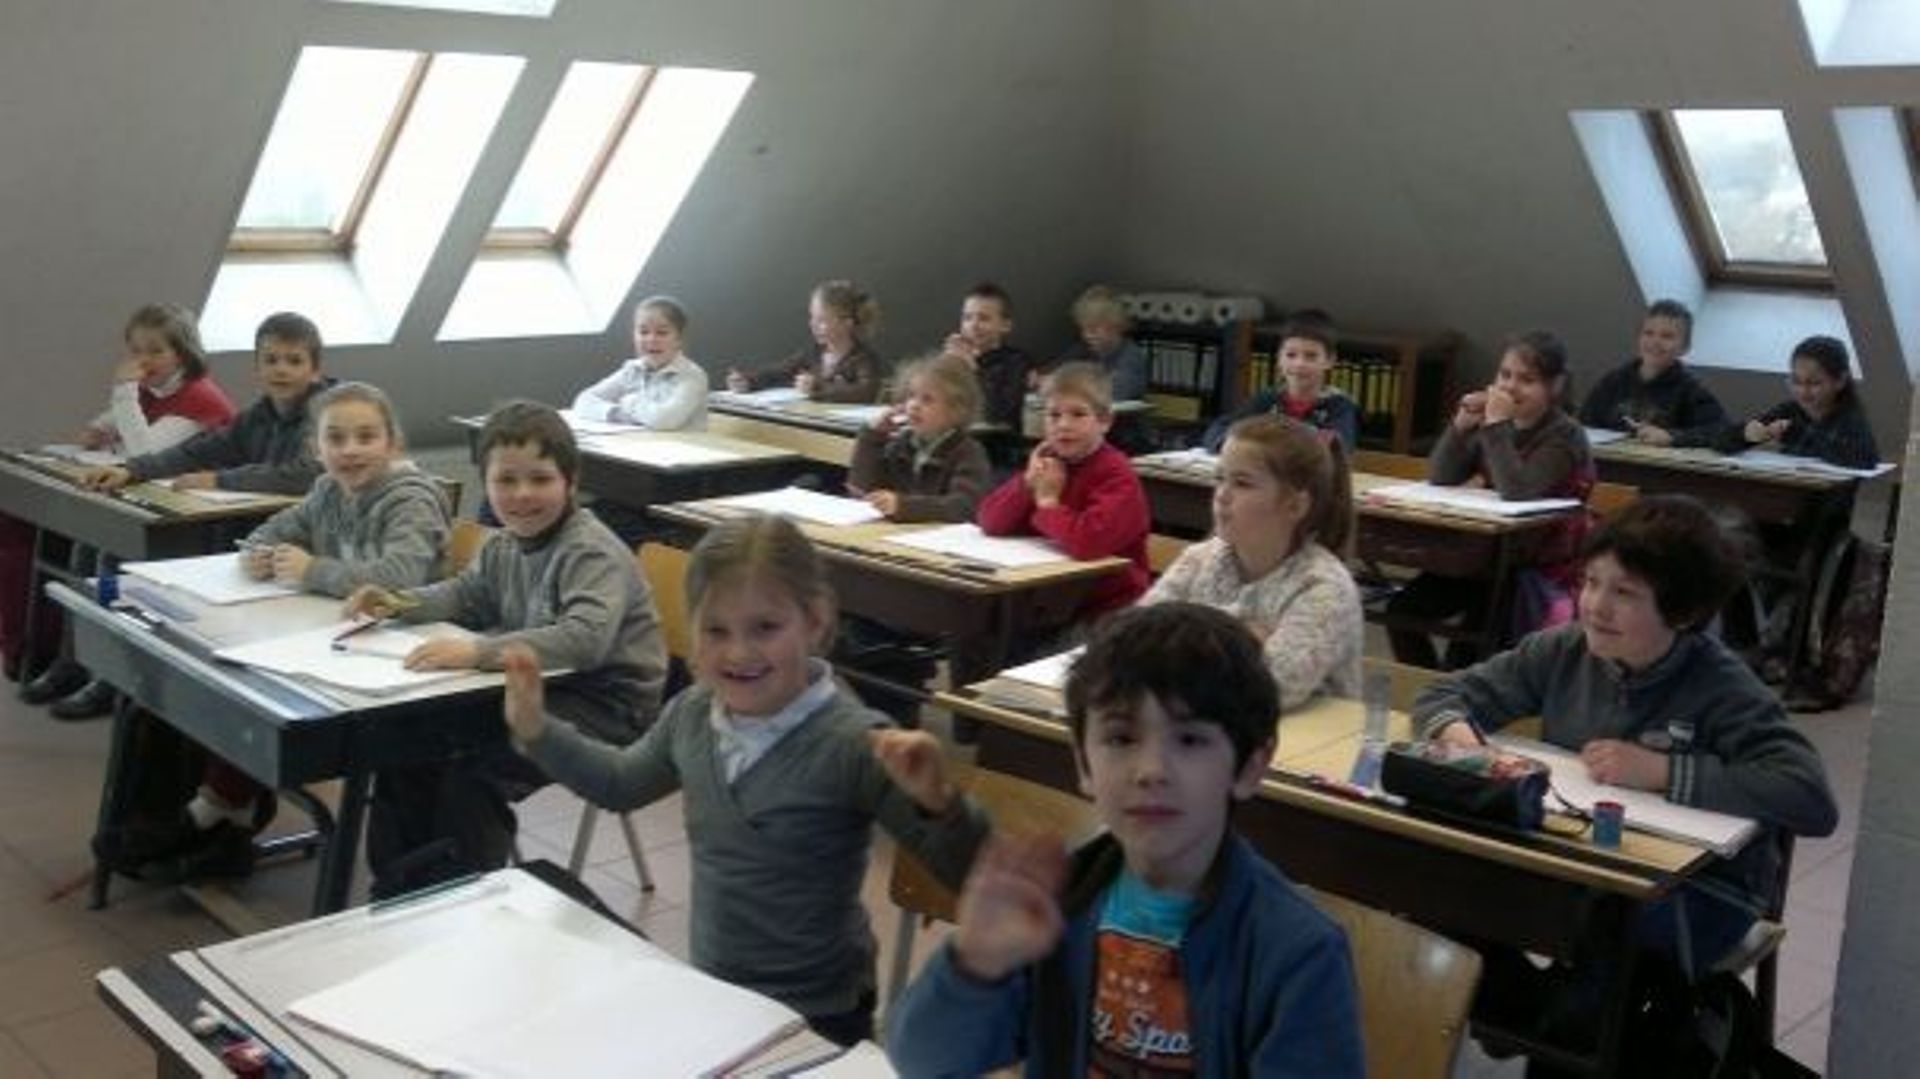 Ouverture des inscriptions en maternelle à Bruxelles: le call center débordé